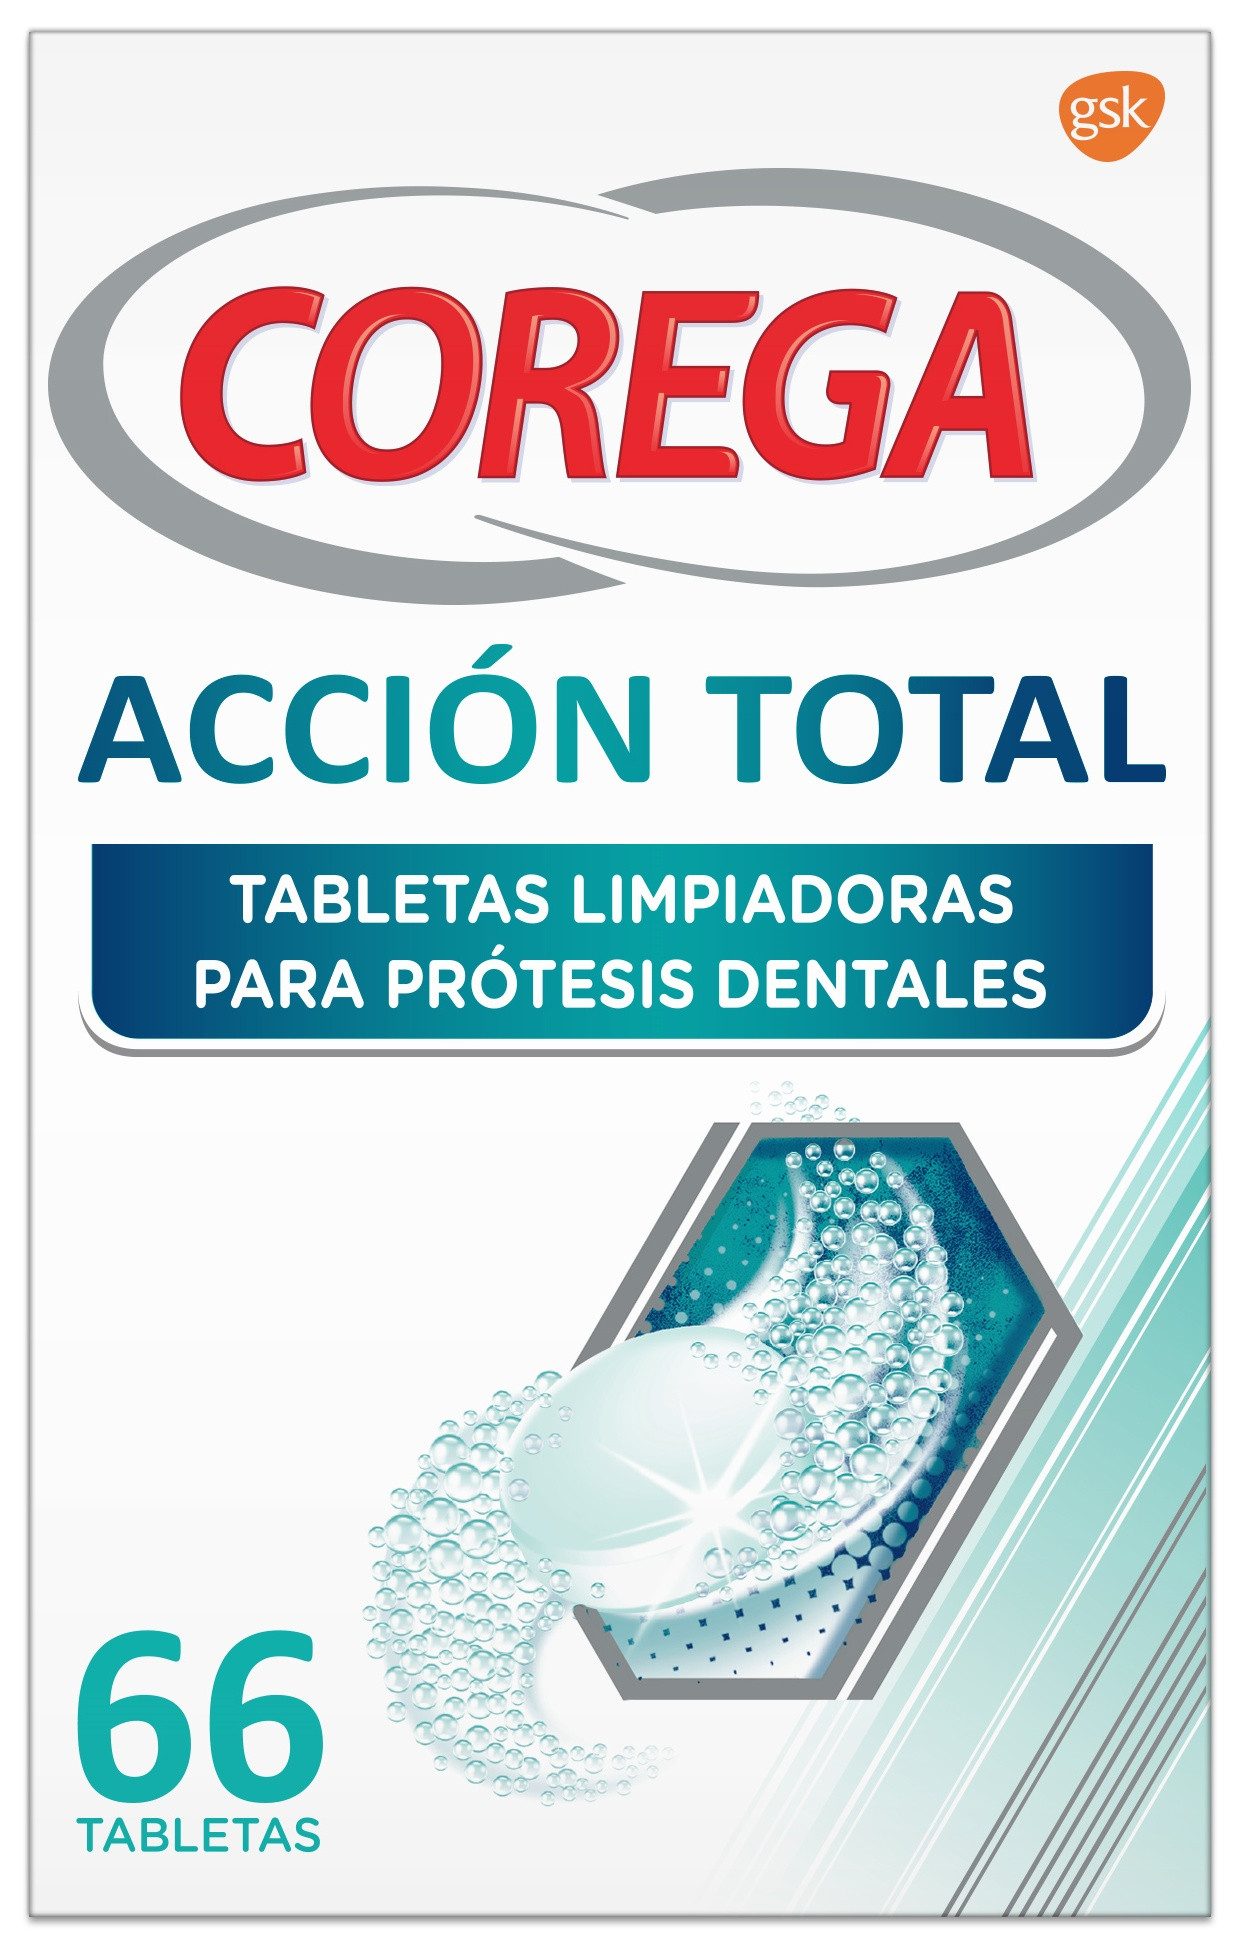 Corega Ortodoncia y Férulas 66 tabletas